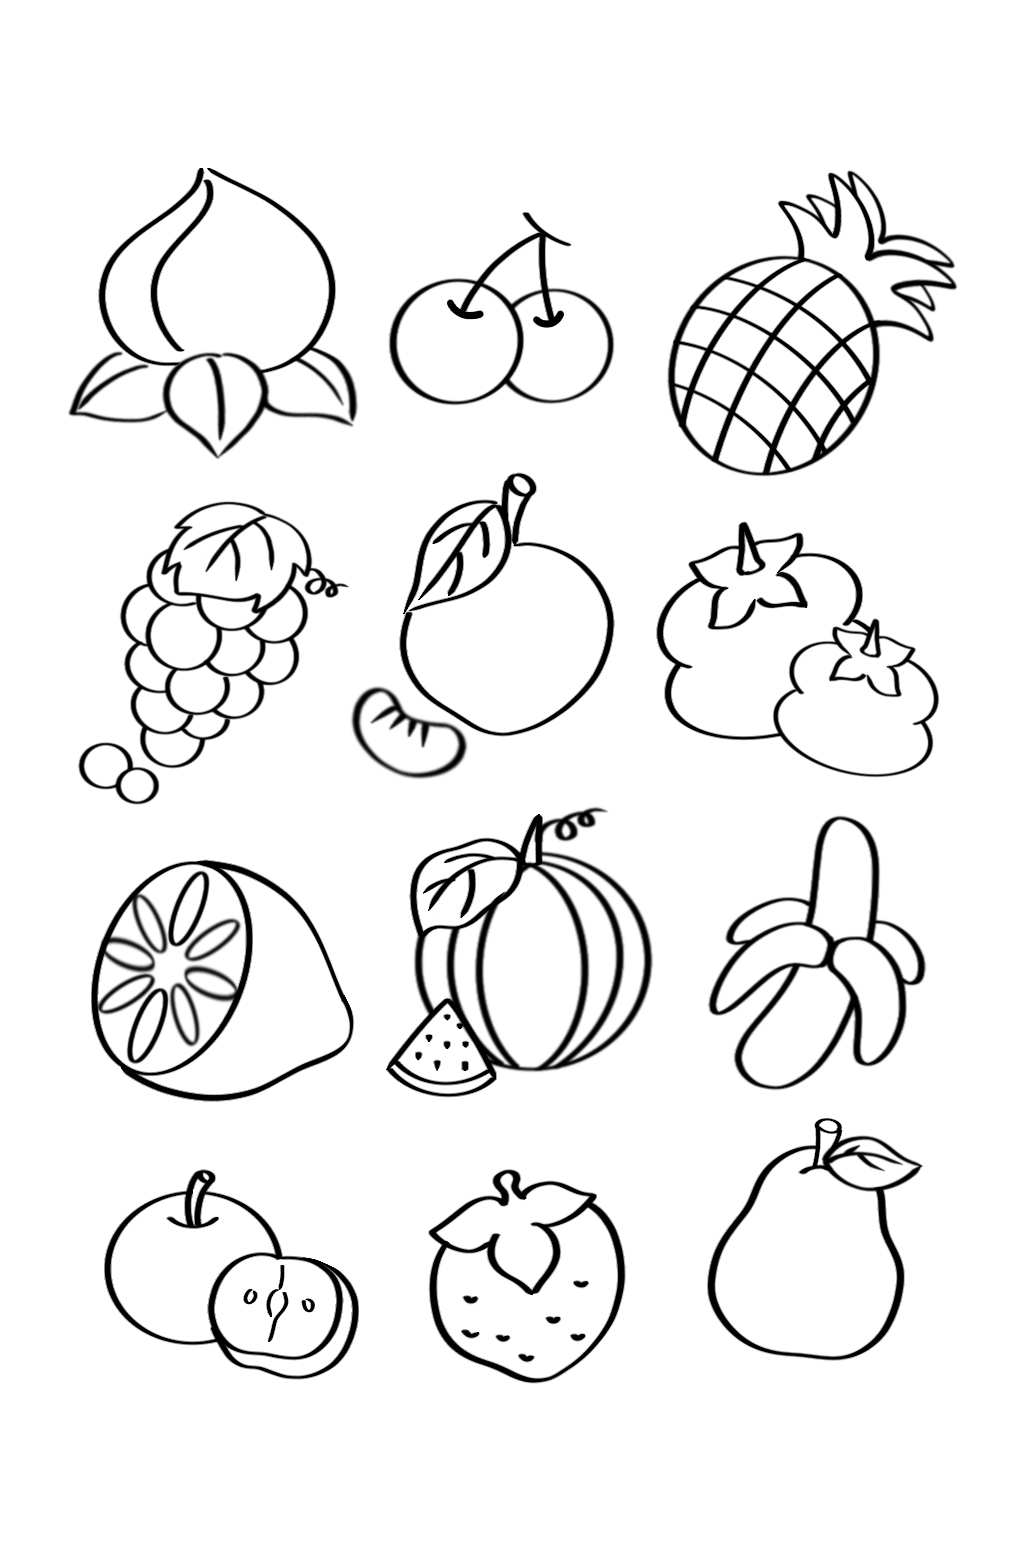 水果的组合线条画教案图片